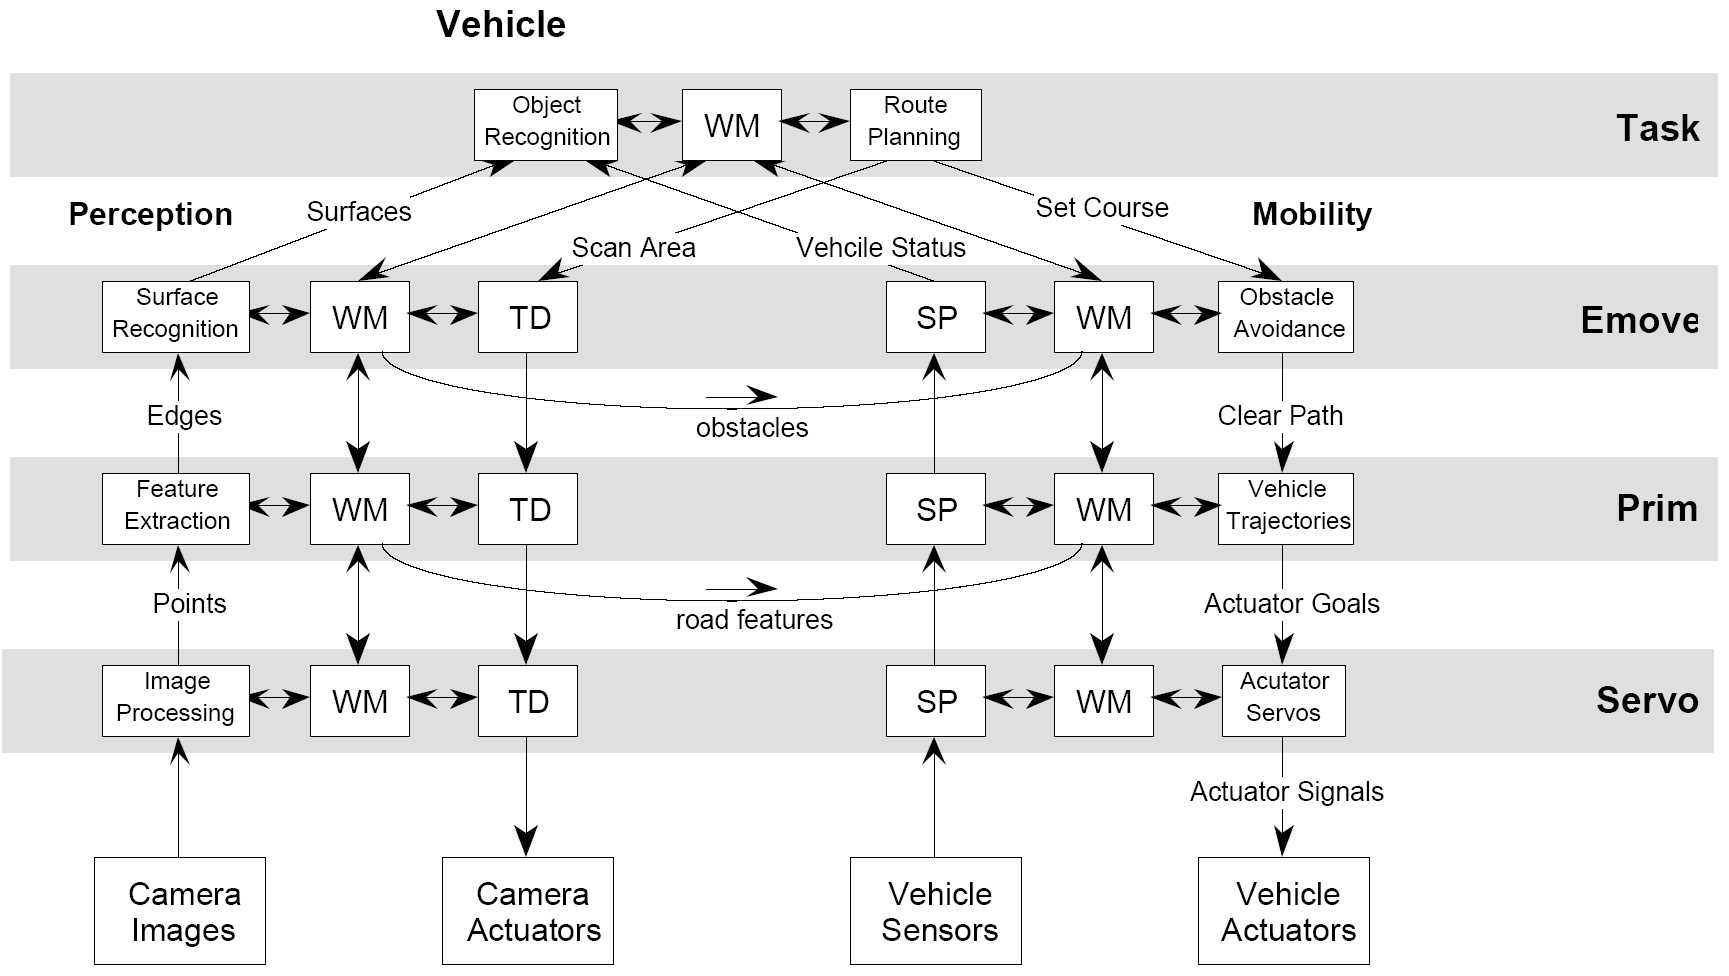 Reference control architecture for autonomous vehicles (NIST)